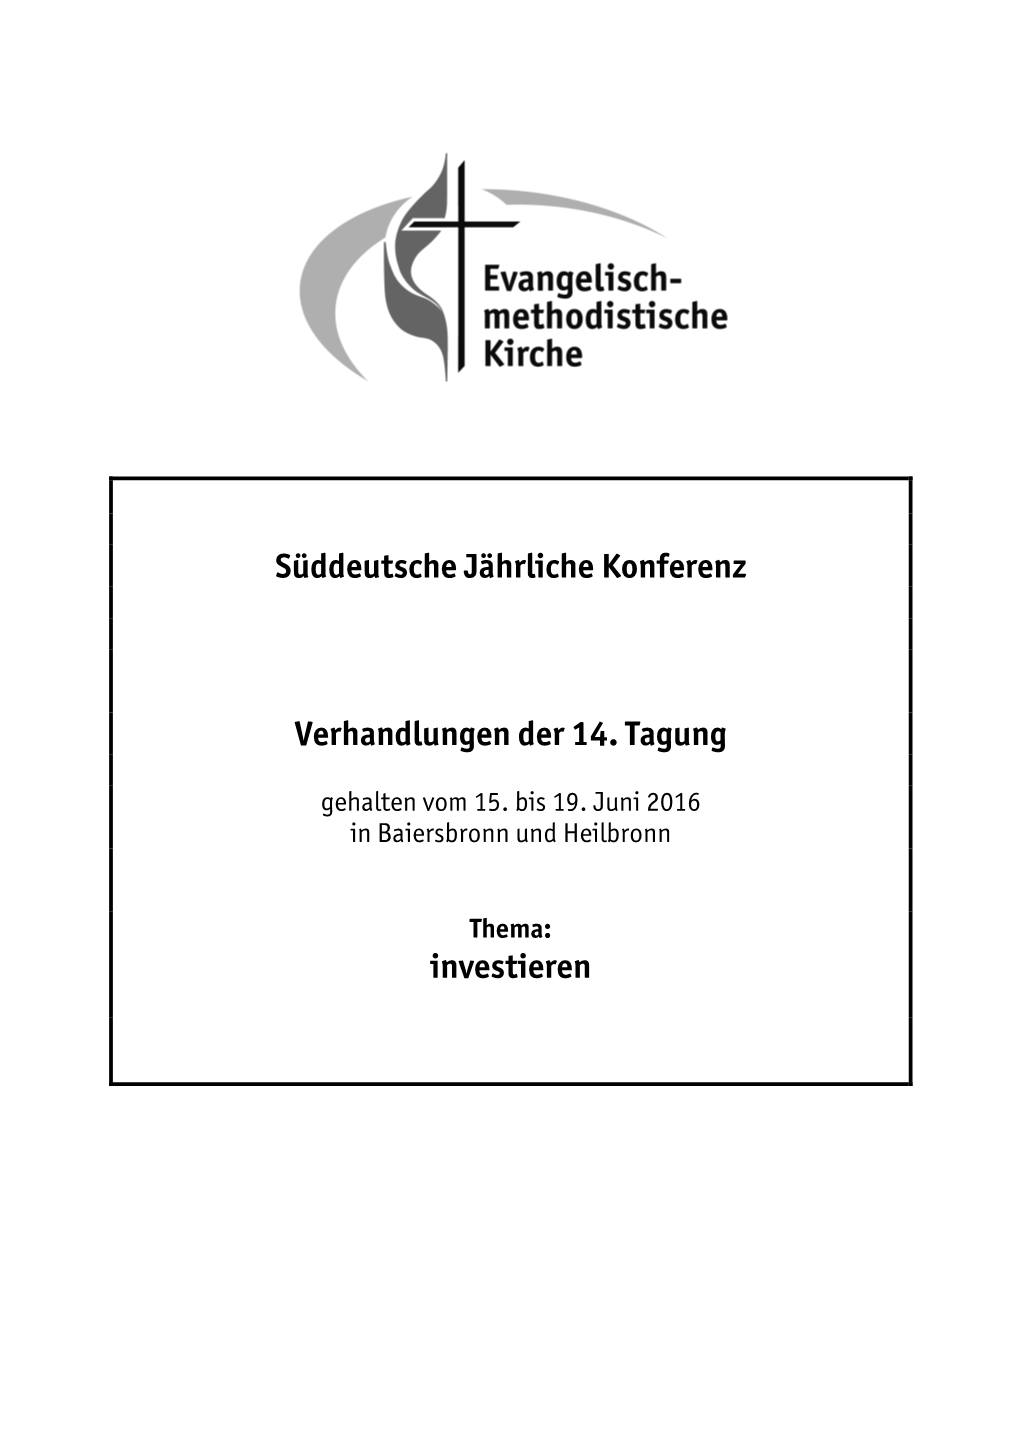 Süddeutsche Jährliche Konferenz Verhandlungen Der 14. Tagung Investieren